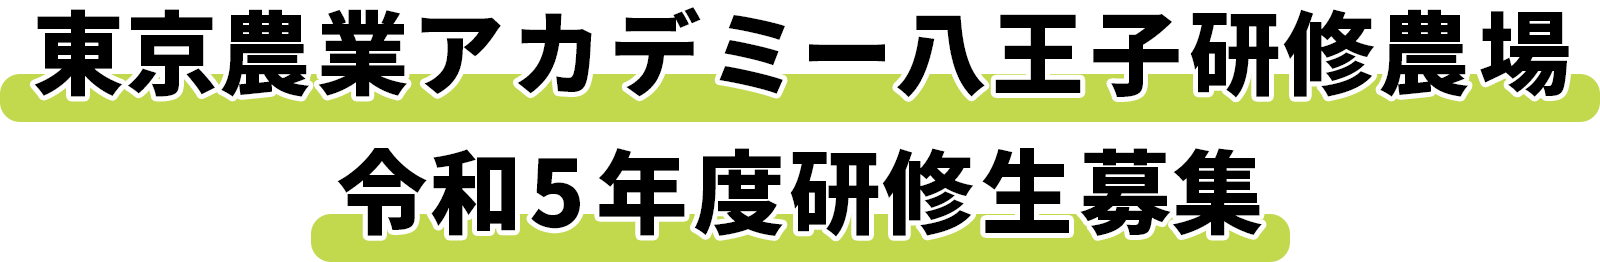 東京農業アカデミー八王子研修農場 令和3年度研修生募集